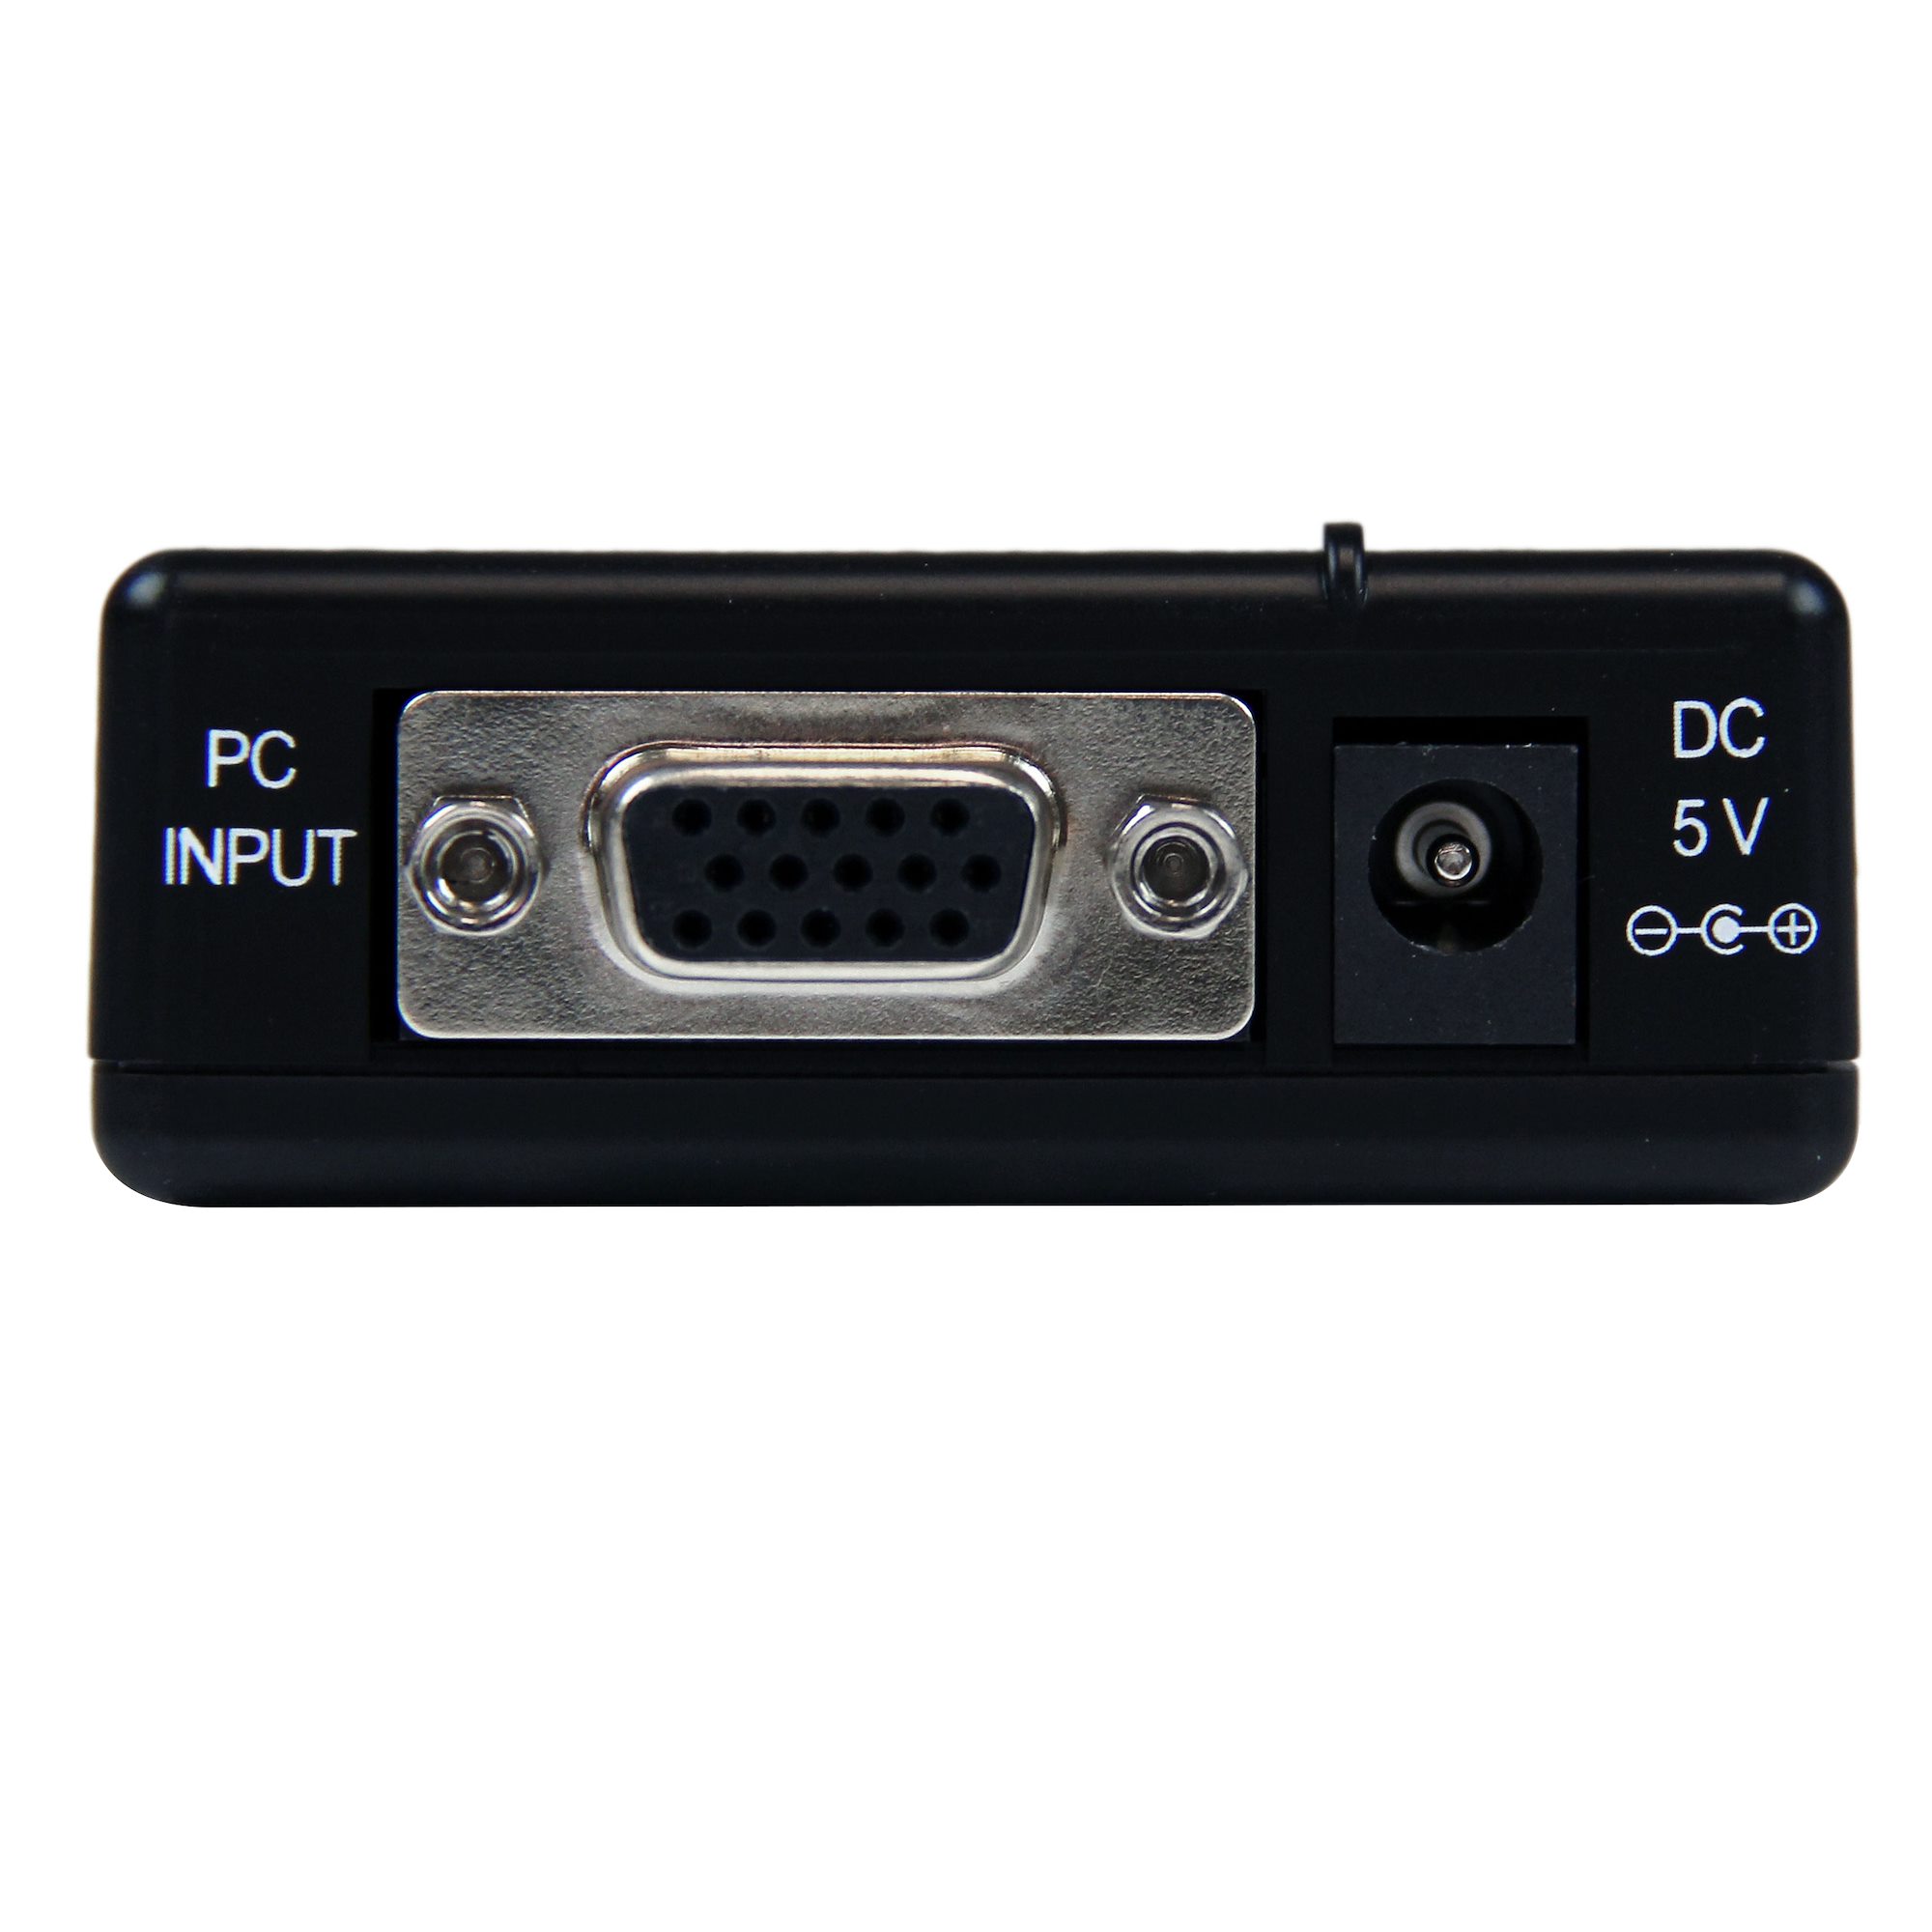 StarTech.com VGA2HDU - Adaptador conversor VGA a HDMI con audio USB y  alimentación : Startechcom: : Informática